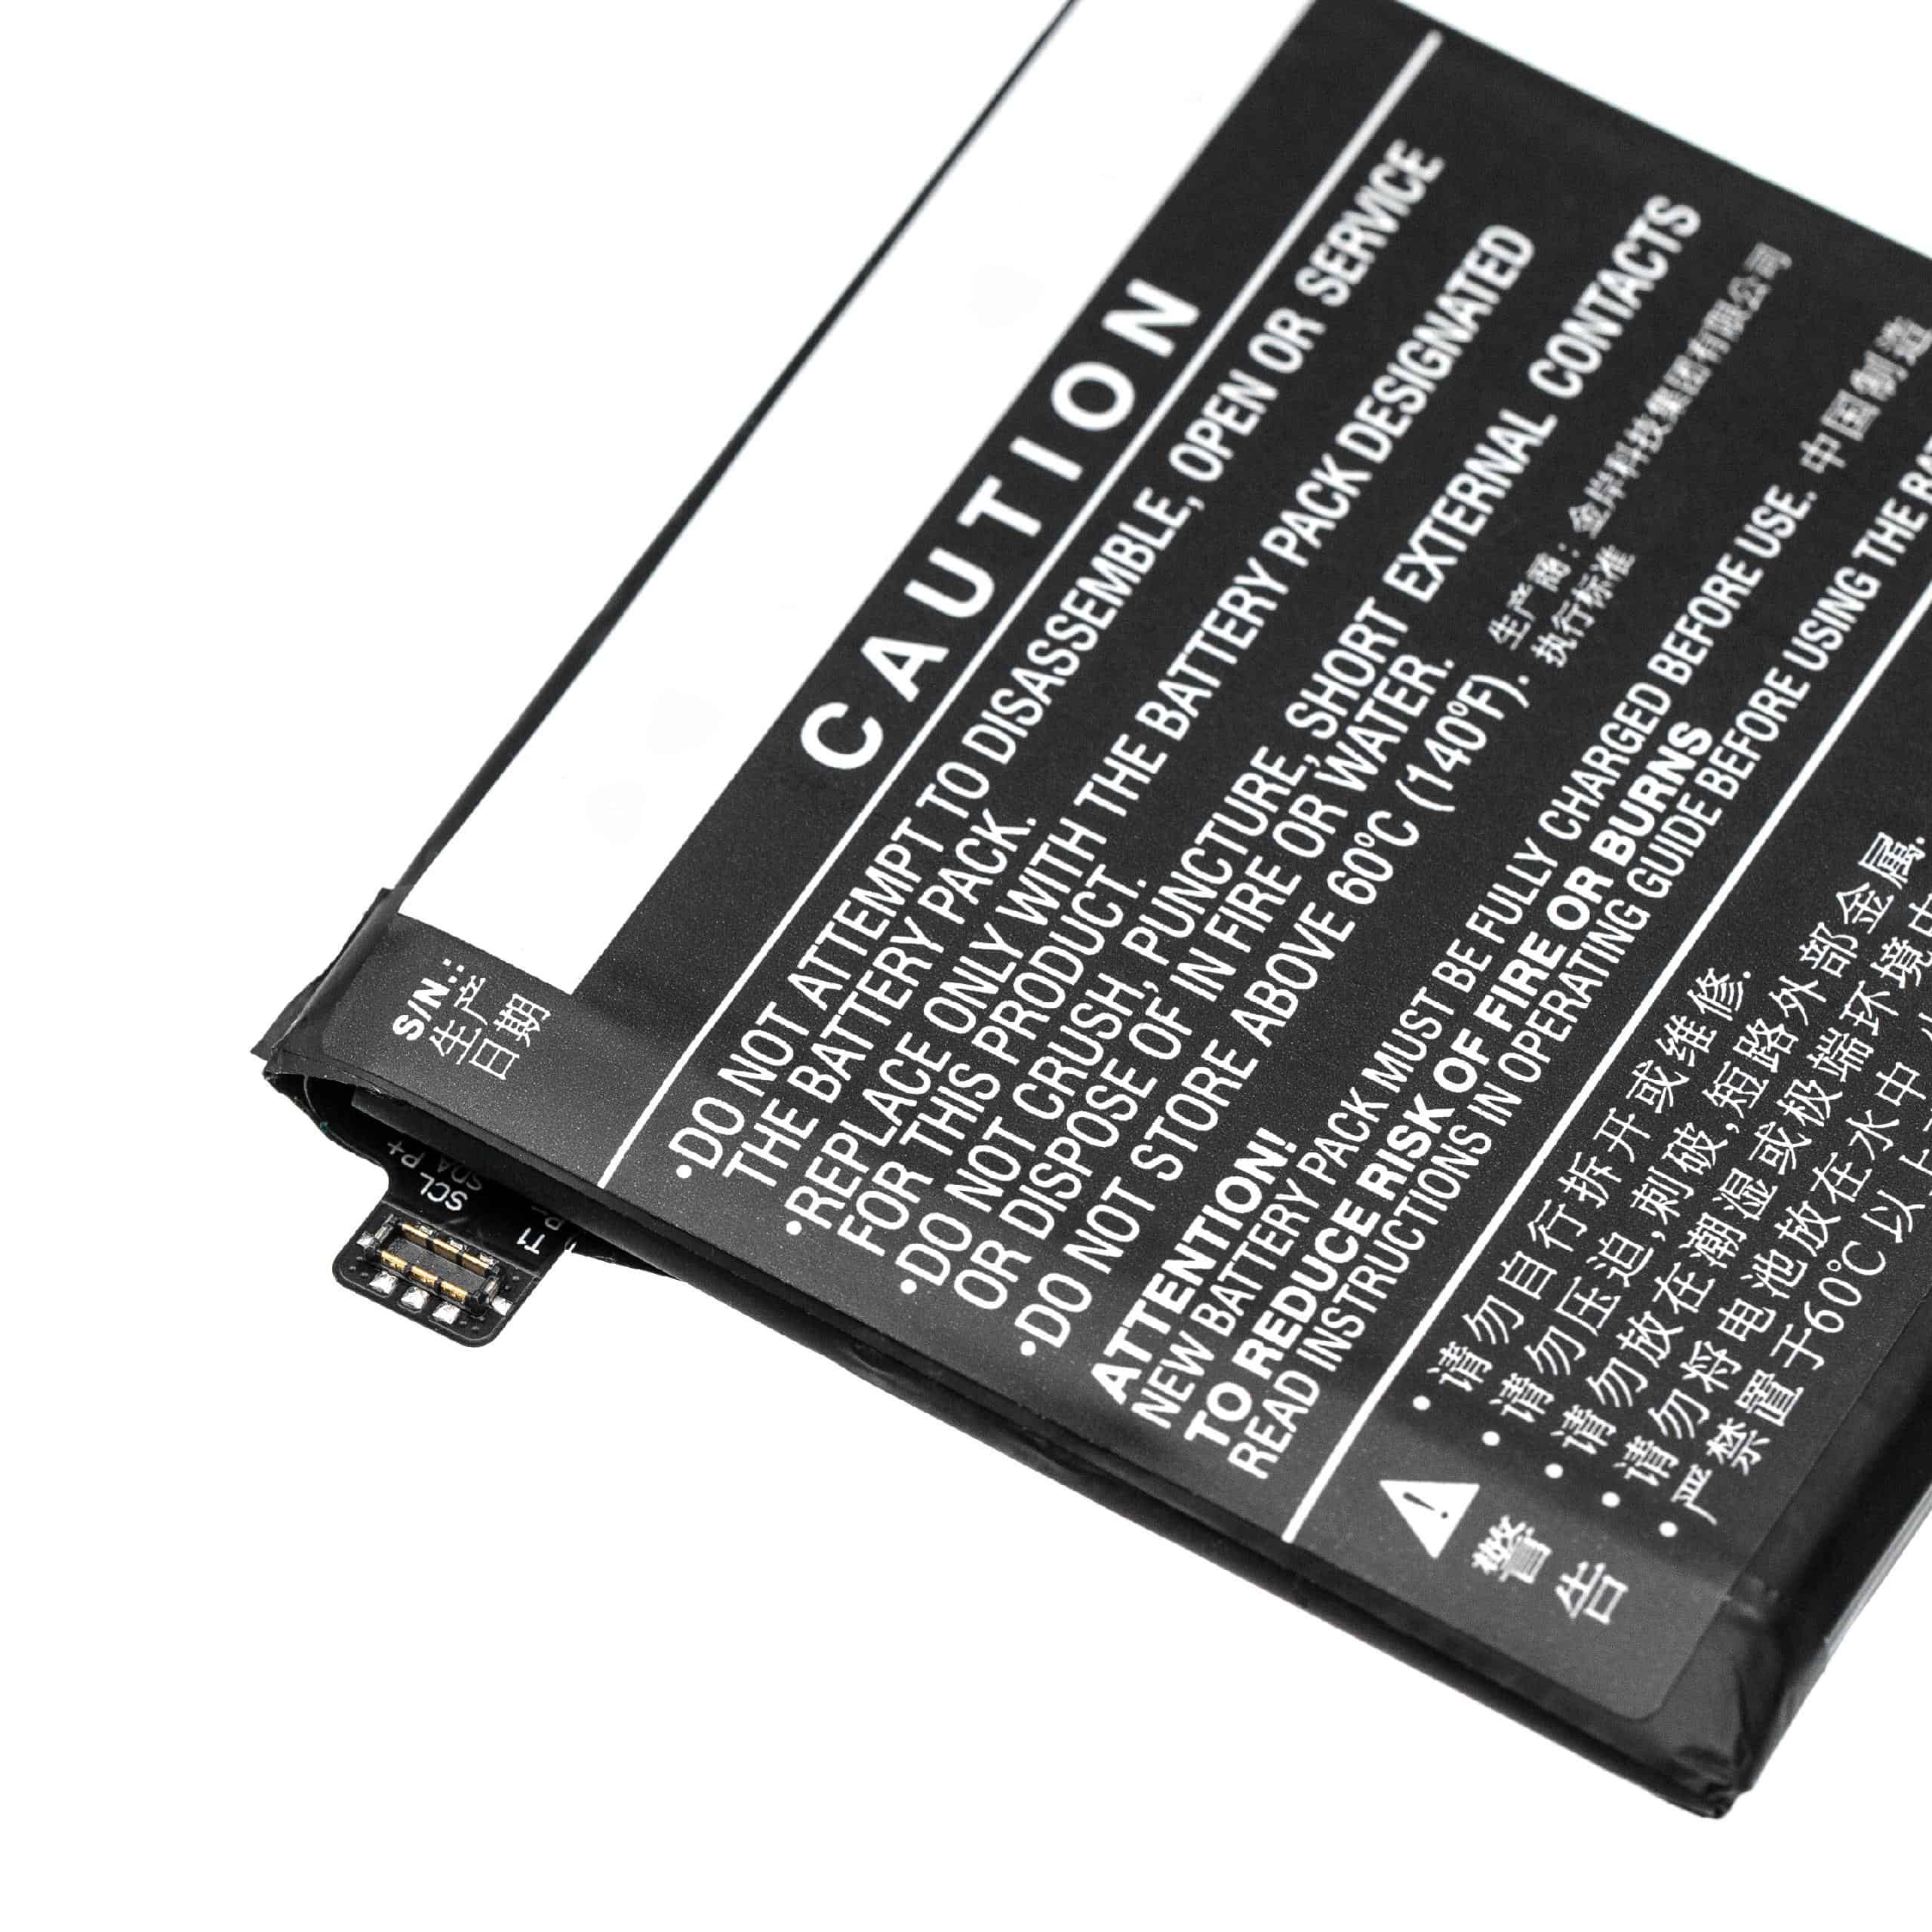 Batterie remplace OnePlus BLP699 pour téléphone portable - 3900mAh, 3,85V, Li-polymère